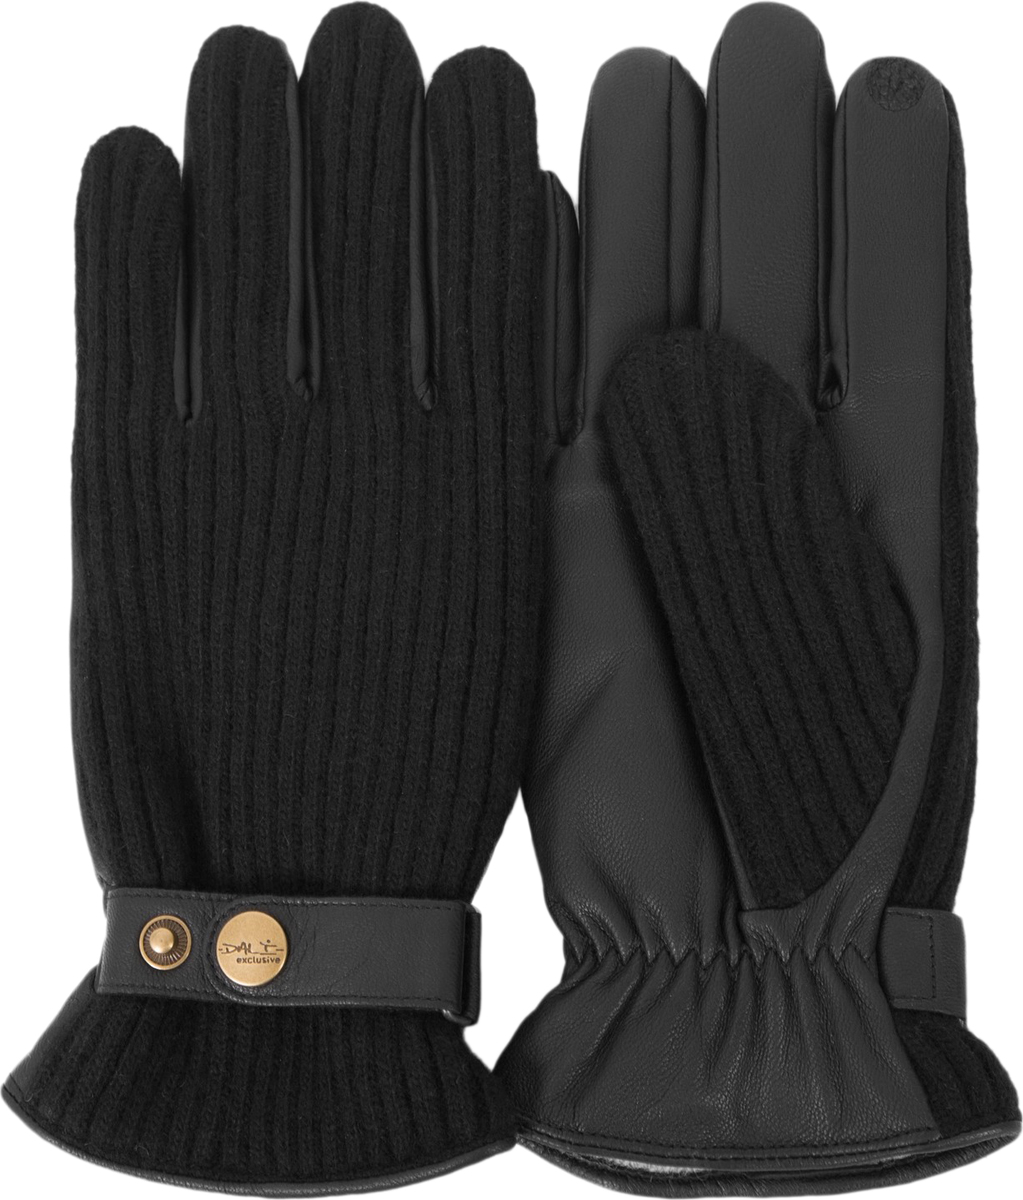 Перчатки мужские Dali Exclusive, цвет: черный. i.GT11_BOND/BL. Размер 10